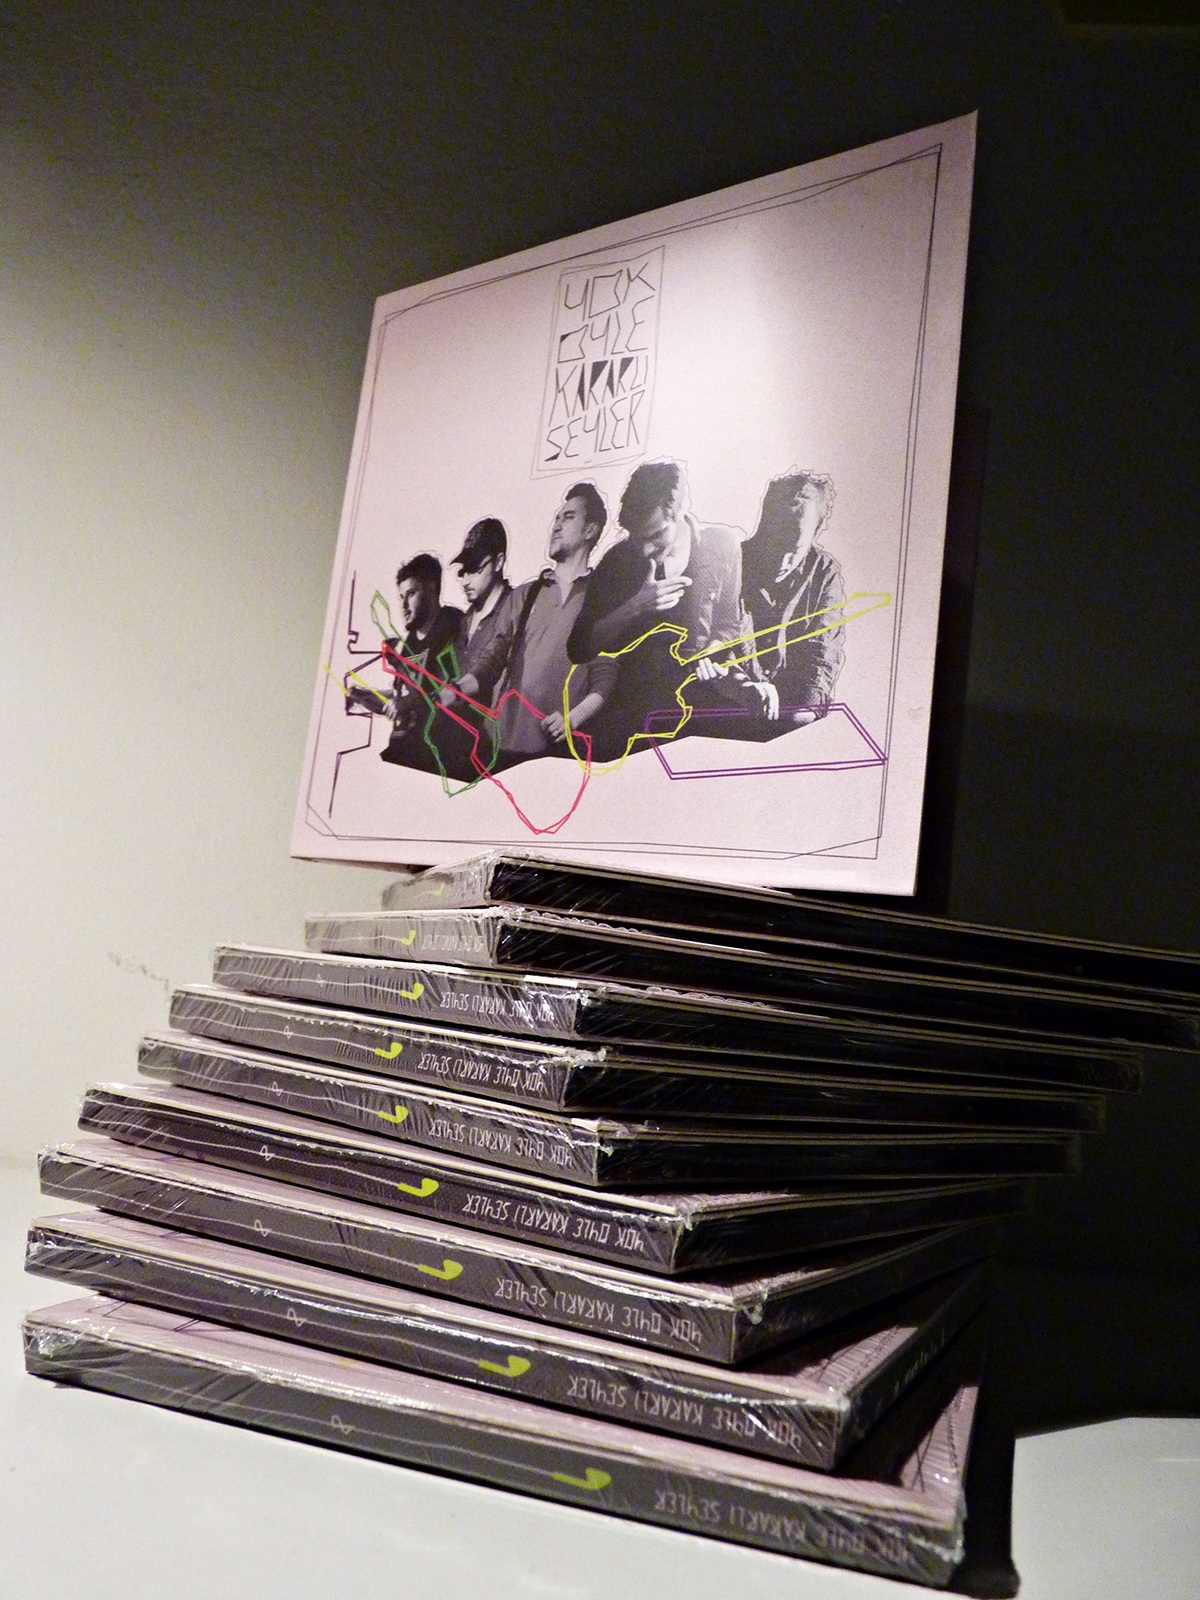 yok öyle kararlı seyler yoks music band cd Album graphic istanbul indie alternative Booklet 2014new album